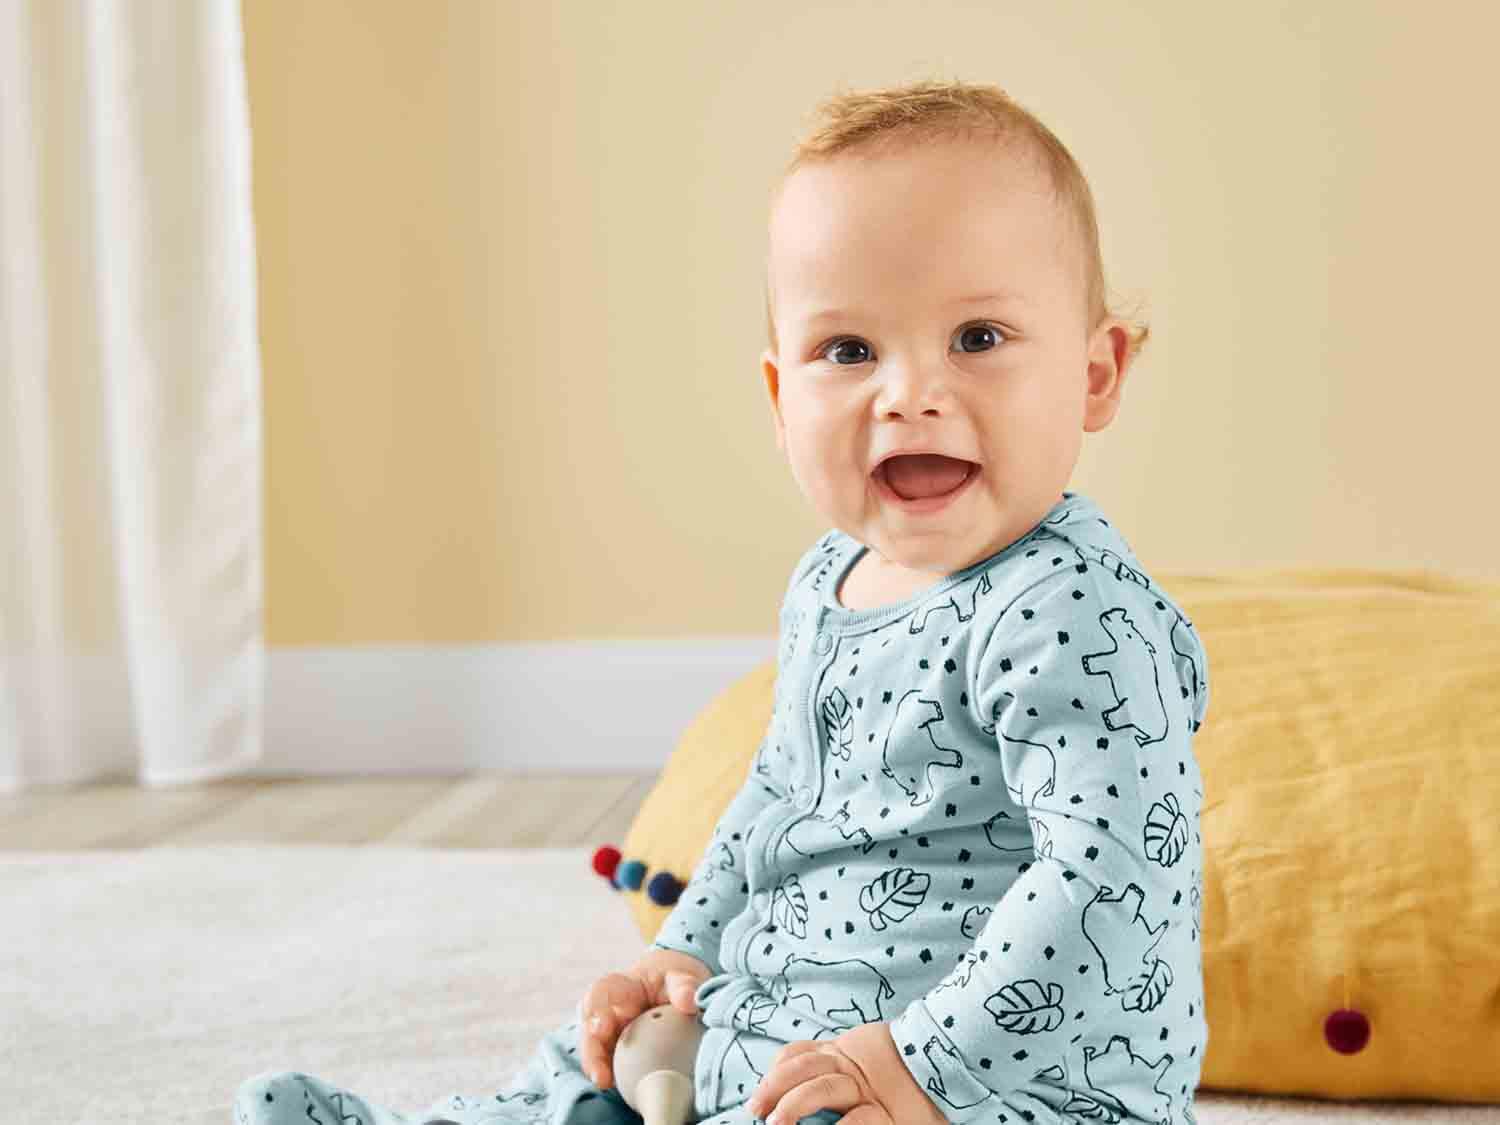 Pijamas enteros para bebé